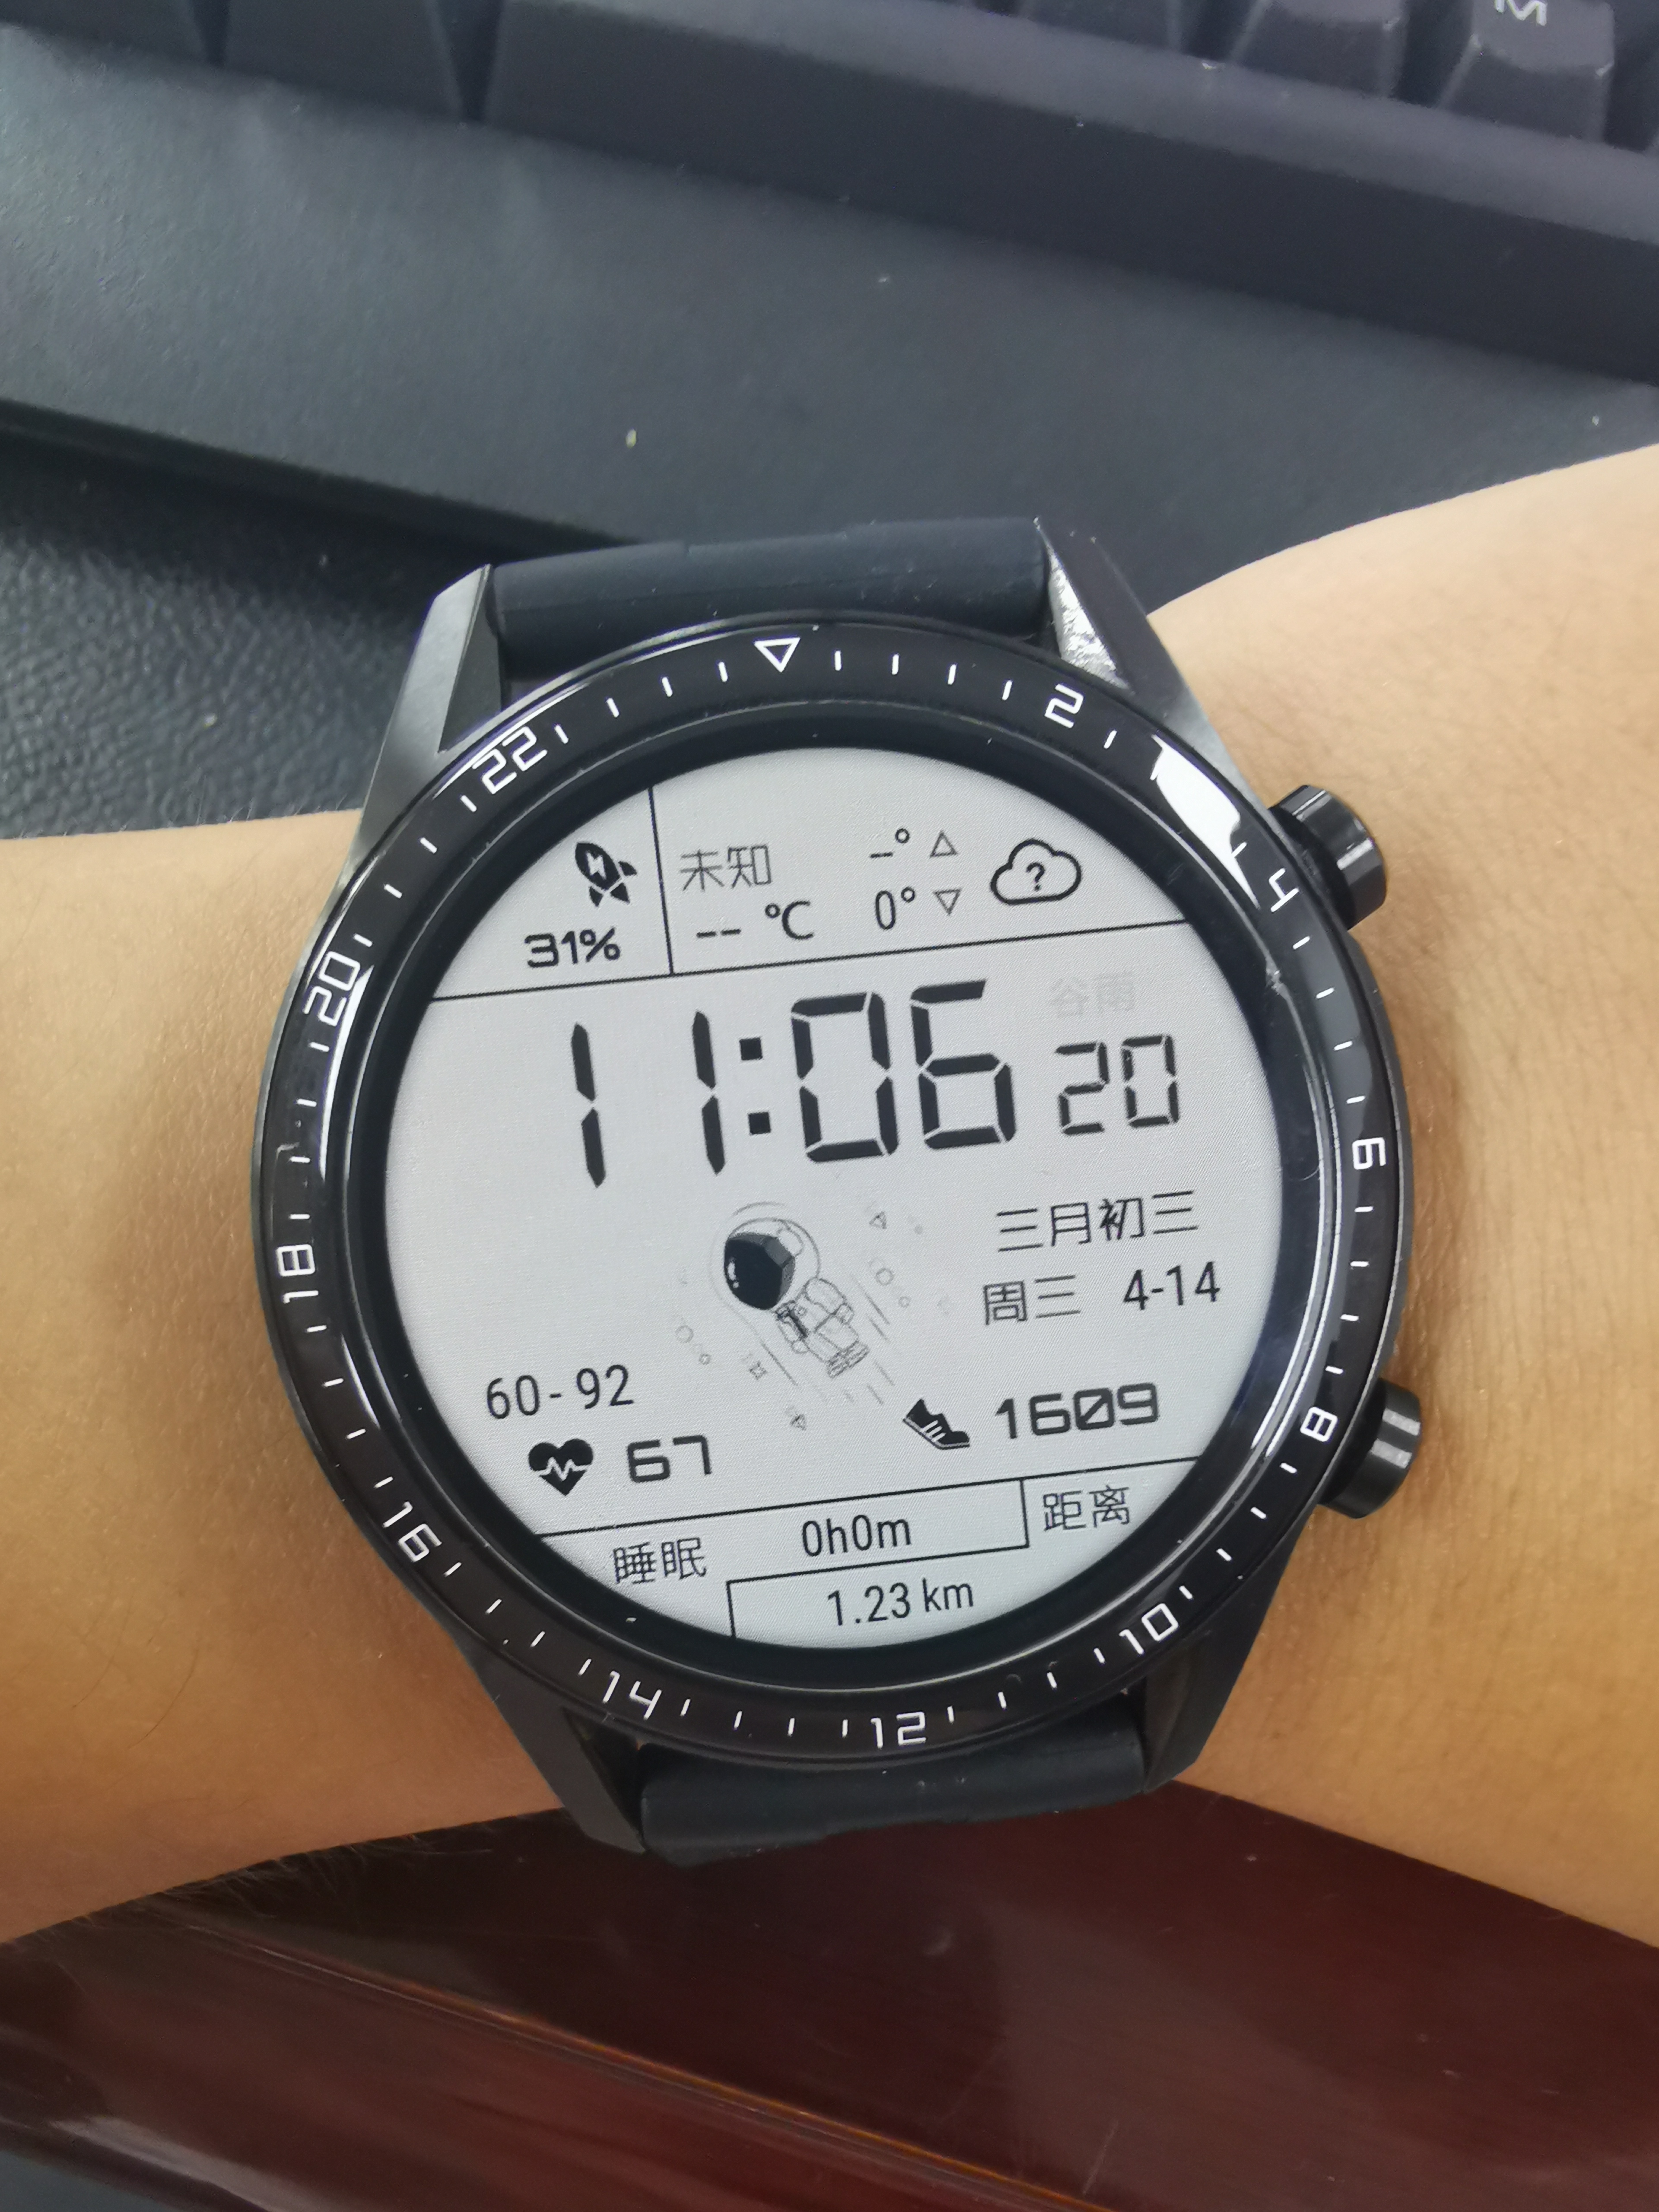 续航一个月的智能手表—华米 GTR 智能手表体验评测 | 爱搞机